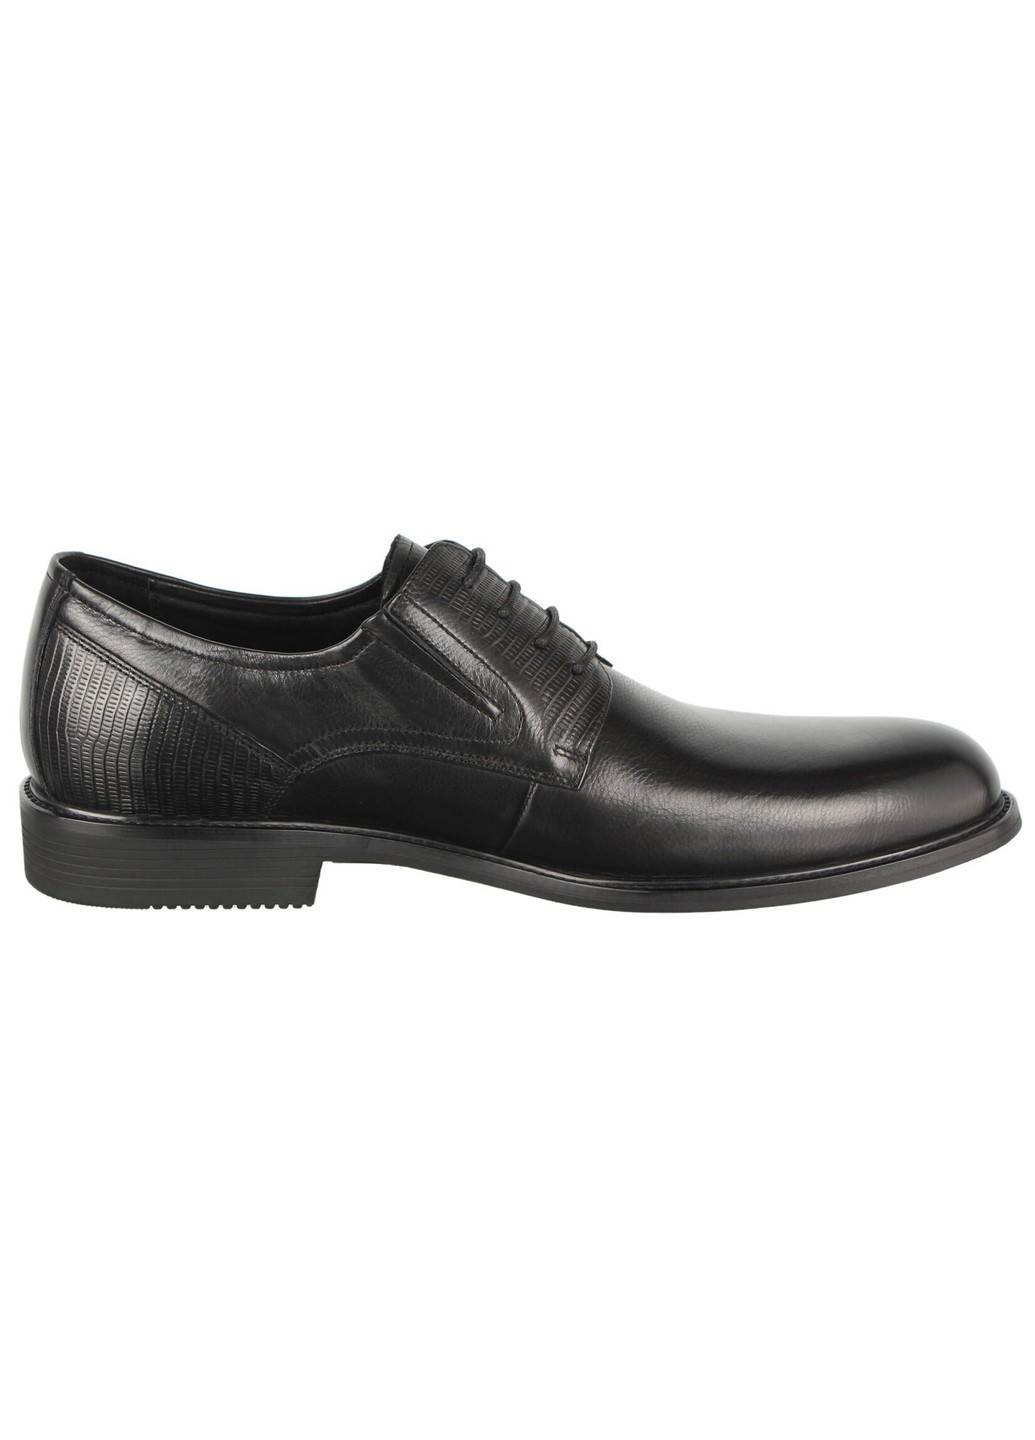 Черные мужские классические туфли 196674 Buts на шнурках